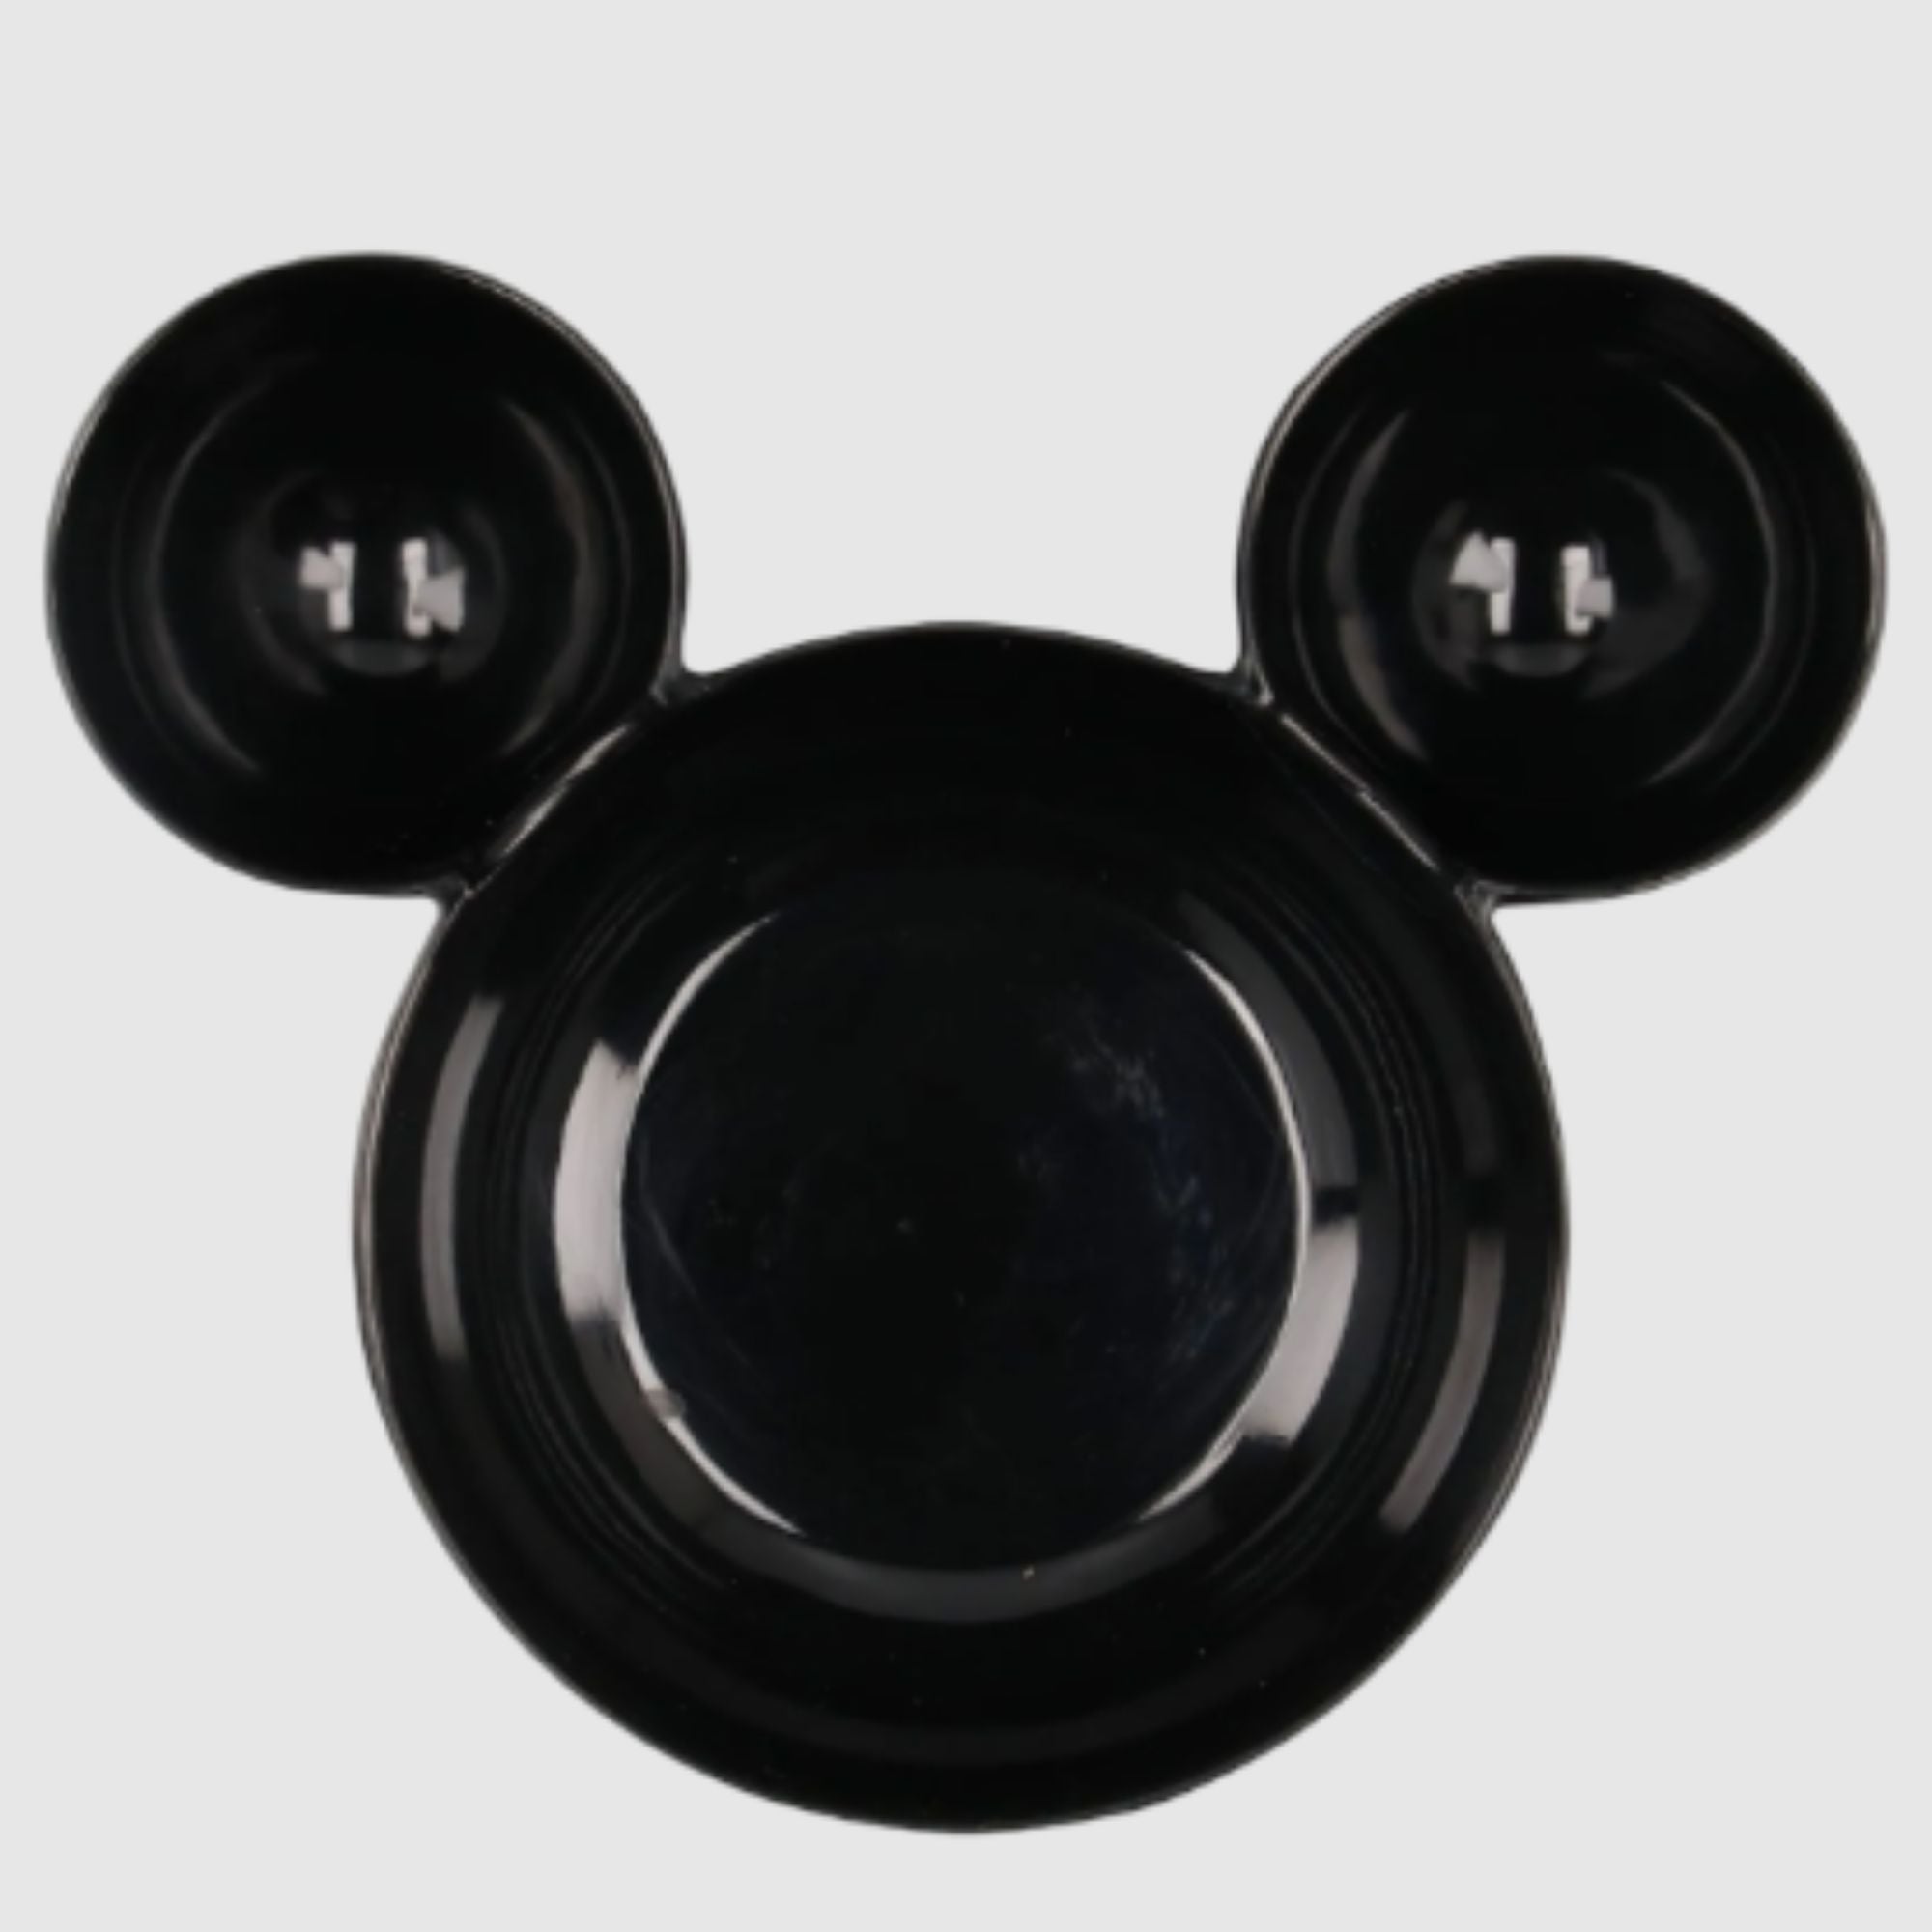 Botanero Tazon Individual con Divisiones Fun Kids Disney Mickey o Minnie Mouse Melamina 300ml